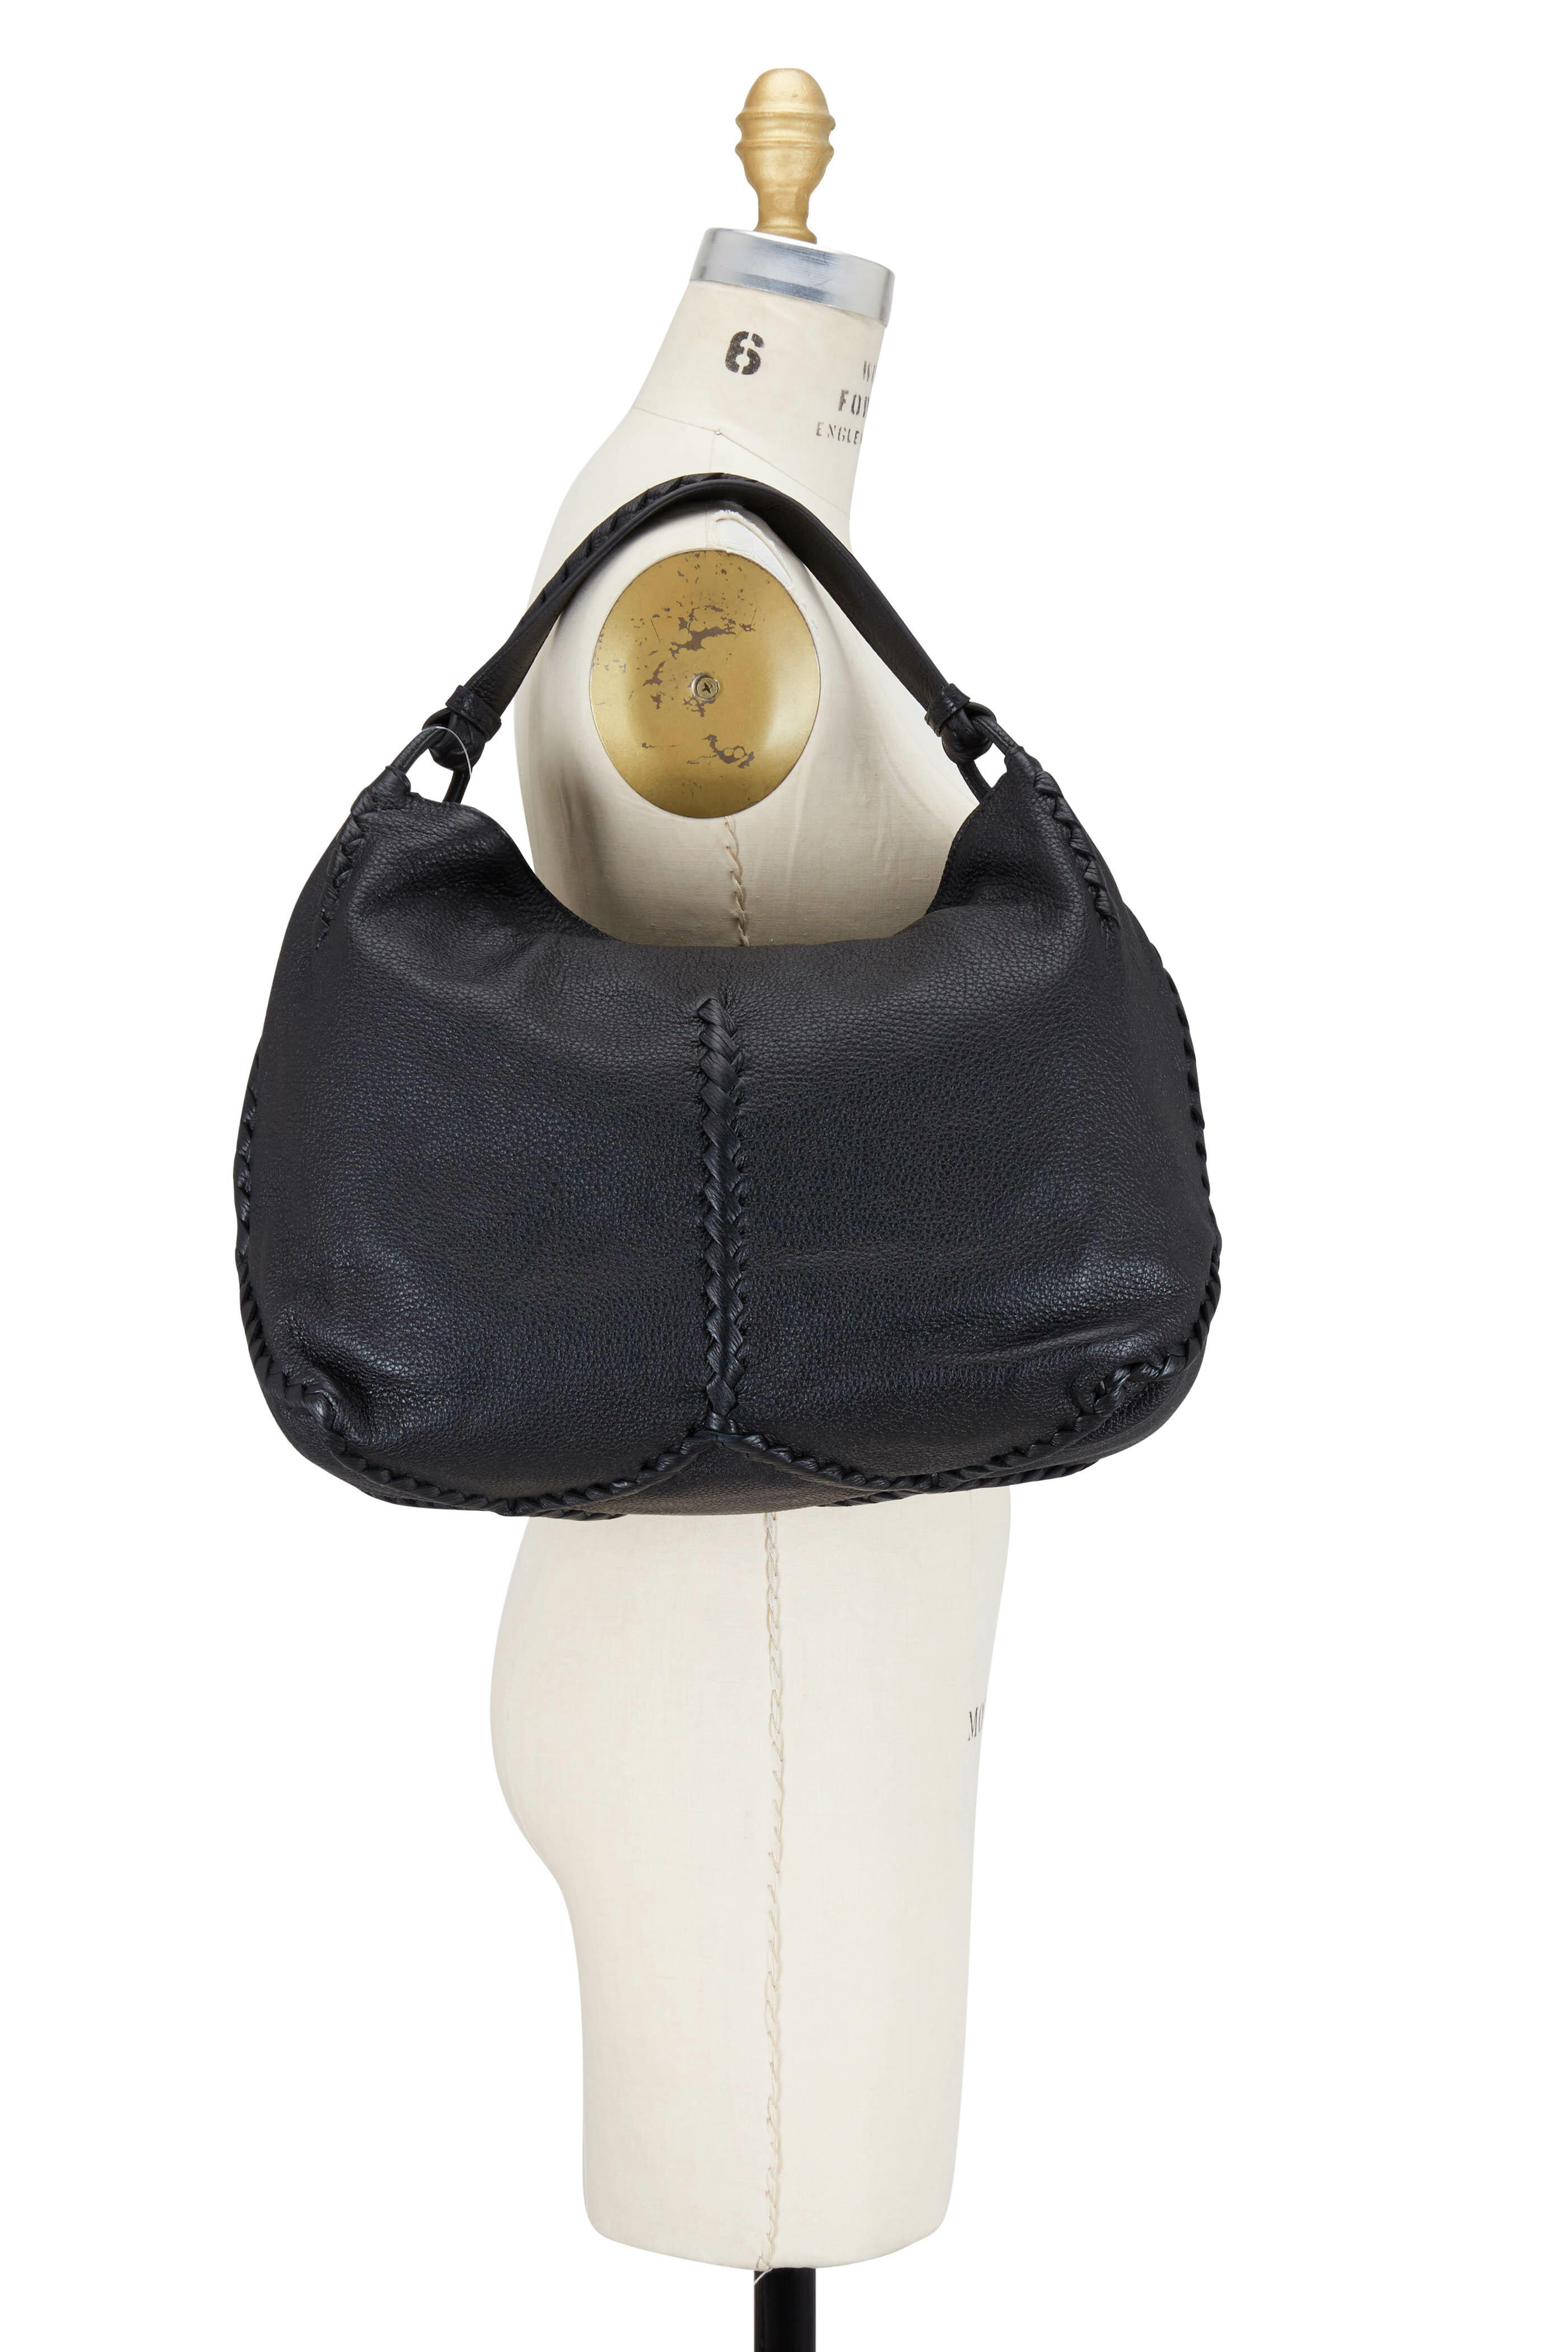 Bottega Veneta Intrecciato-weave Medium Leather Hobo Bag in Black